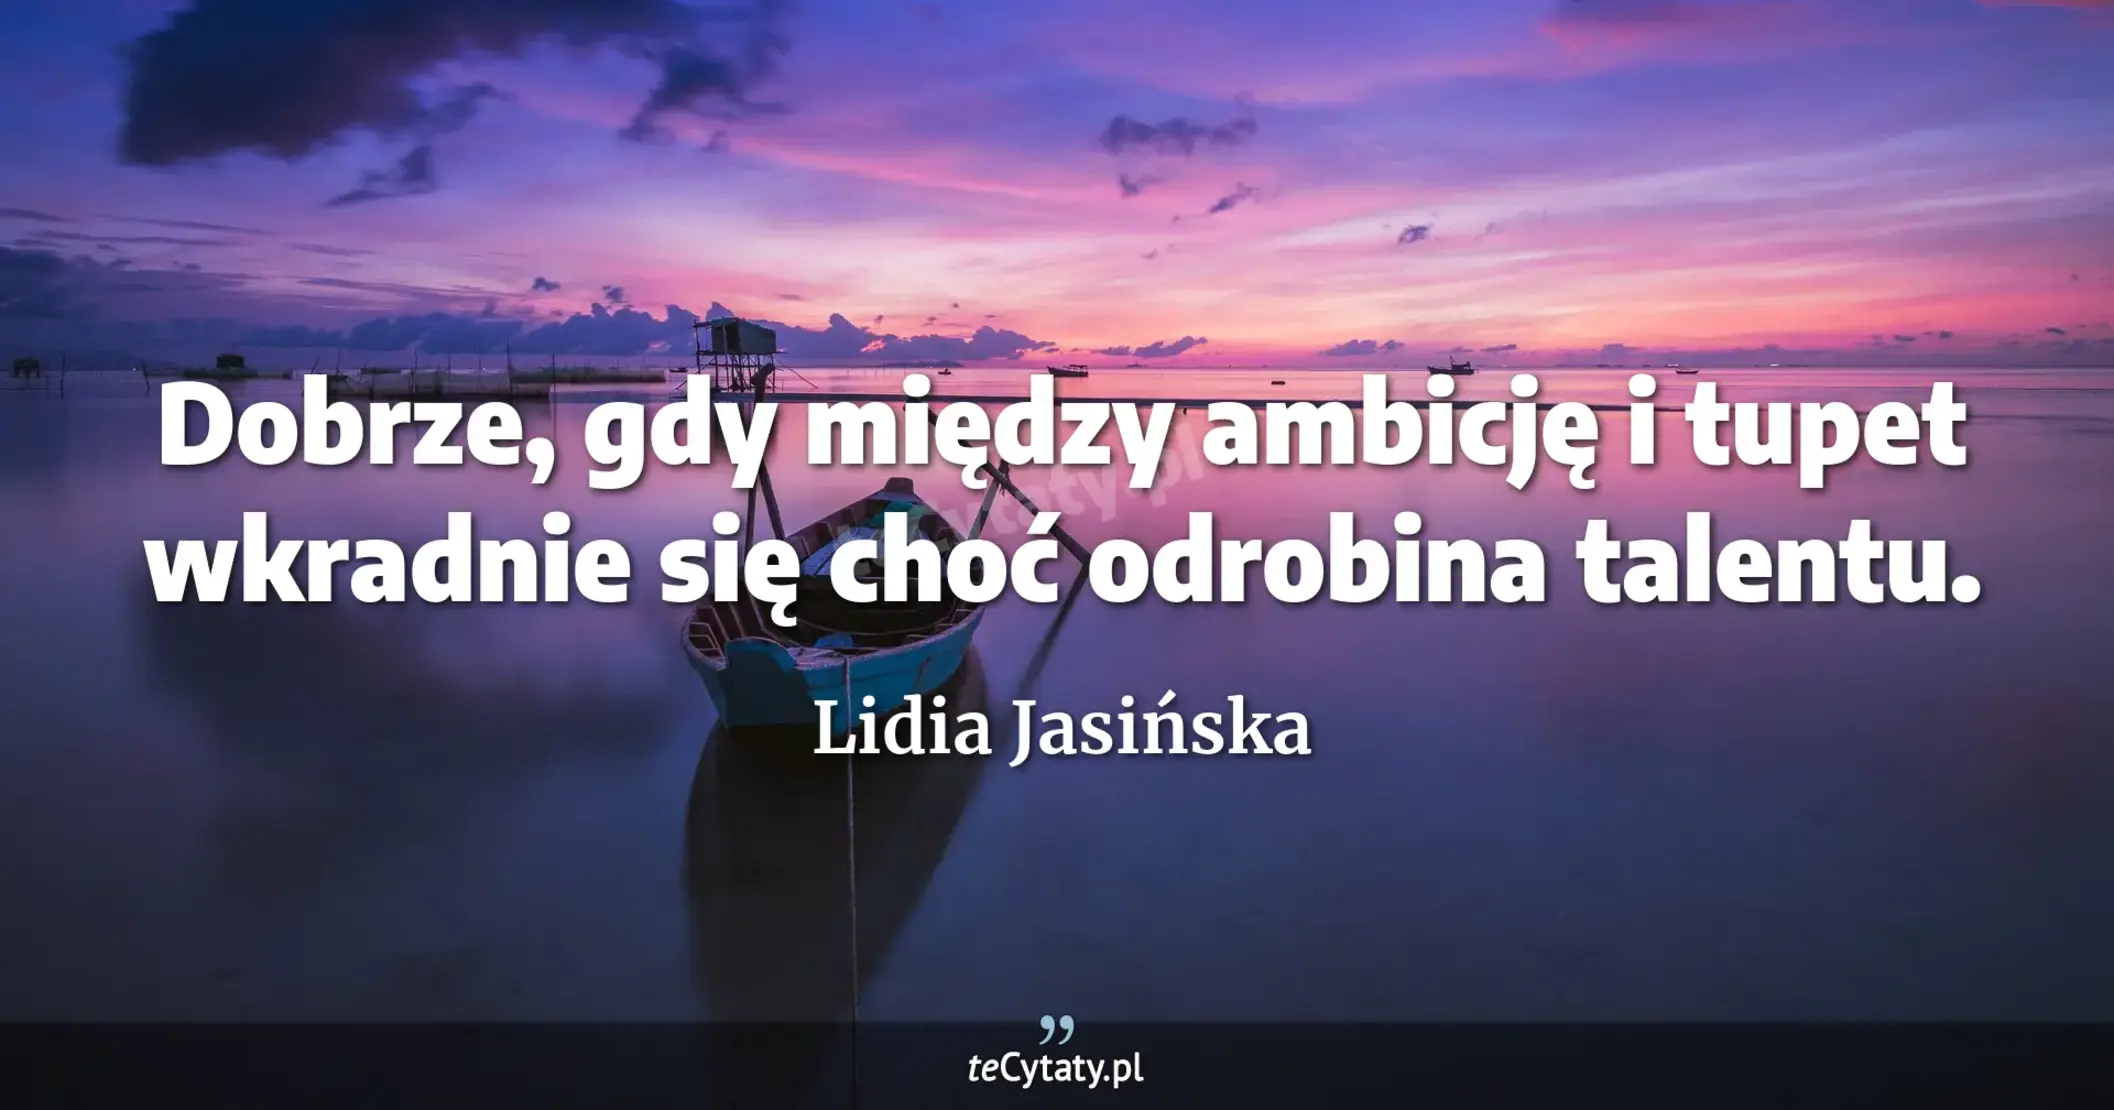 Dobrze, gdy między ambicję i tupet wkradnie się choć odrobina talentu. - Lidia Jasińska